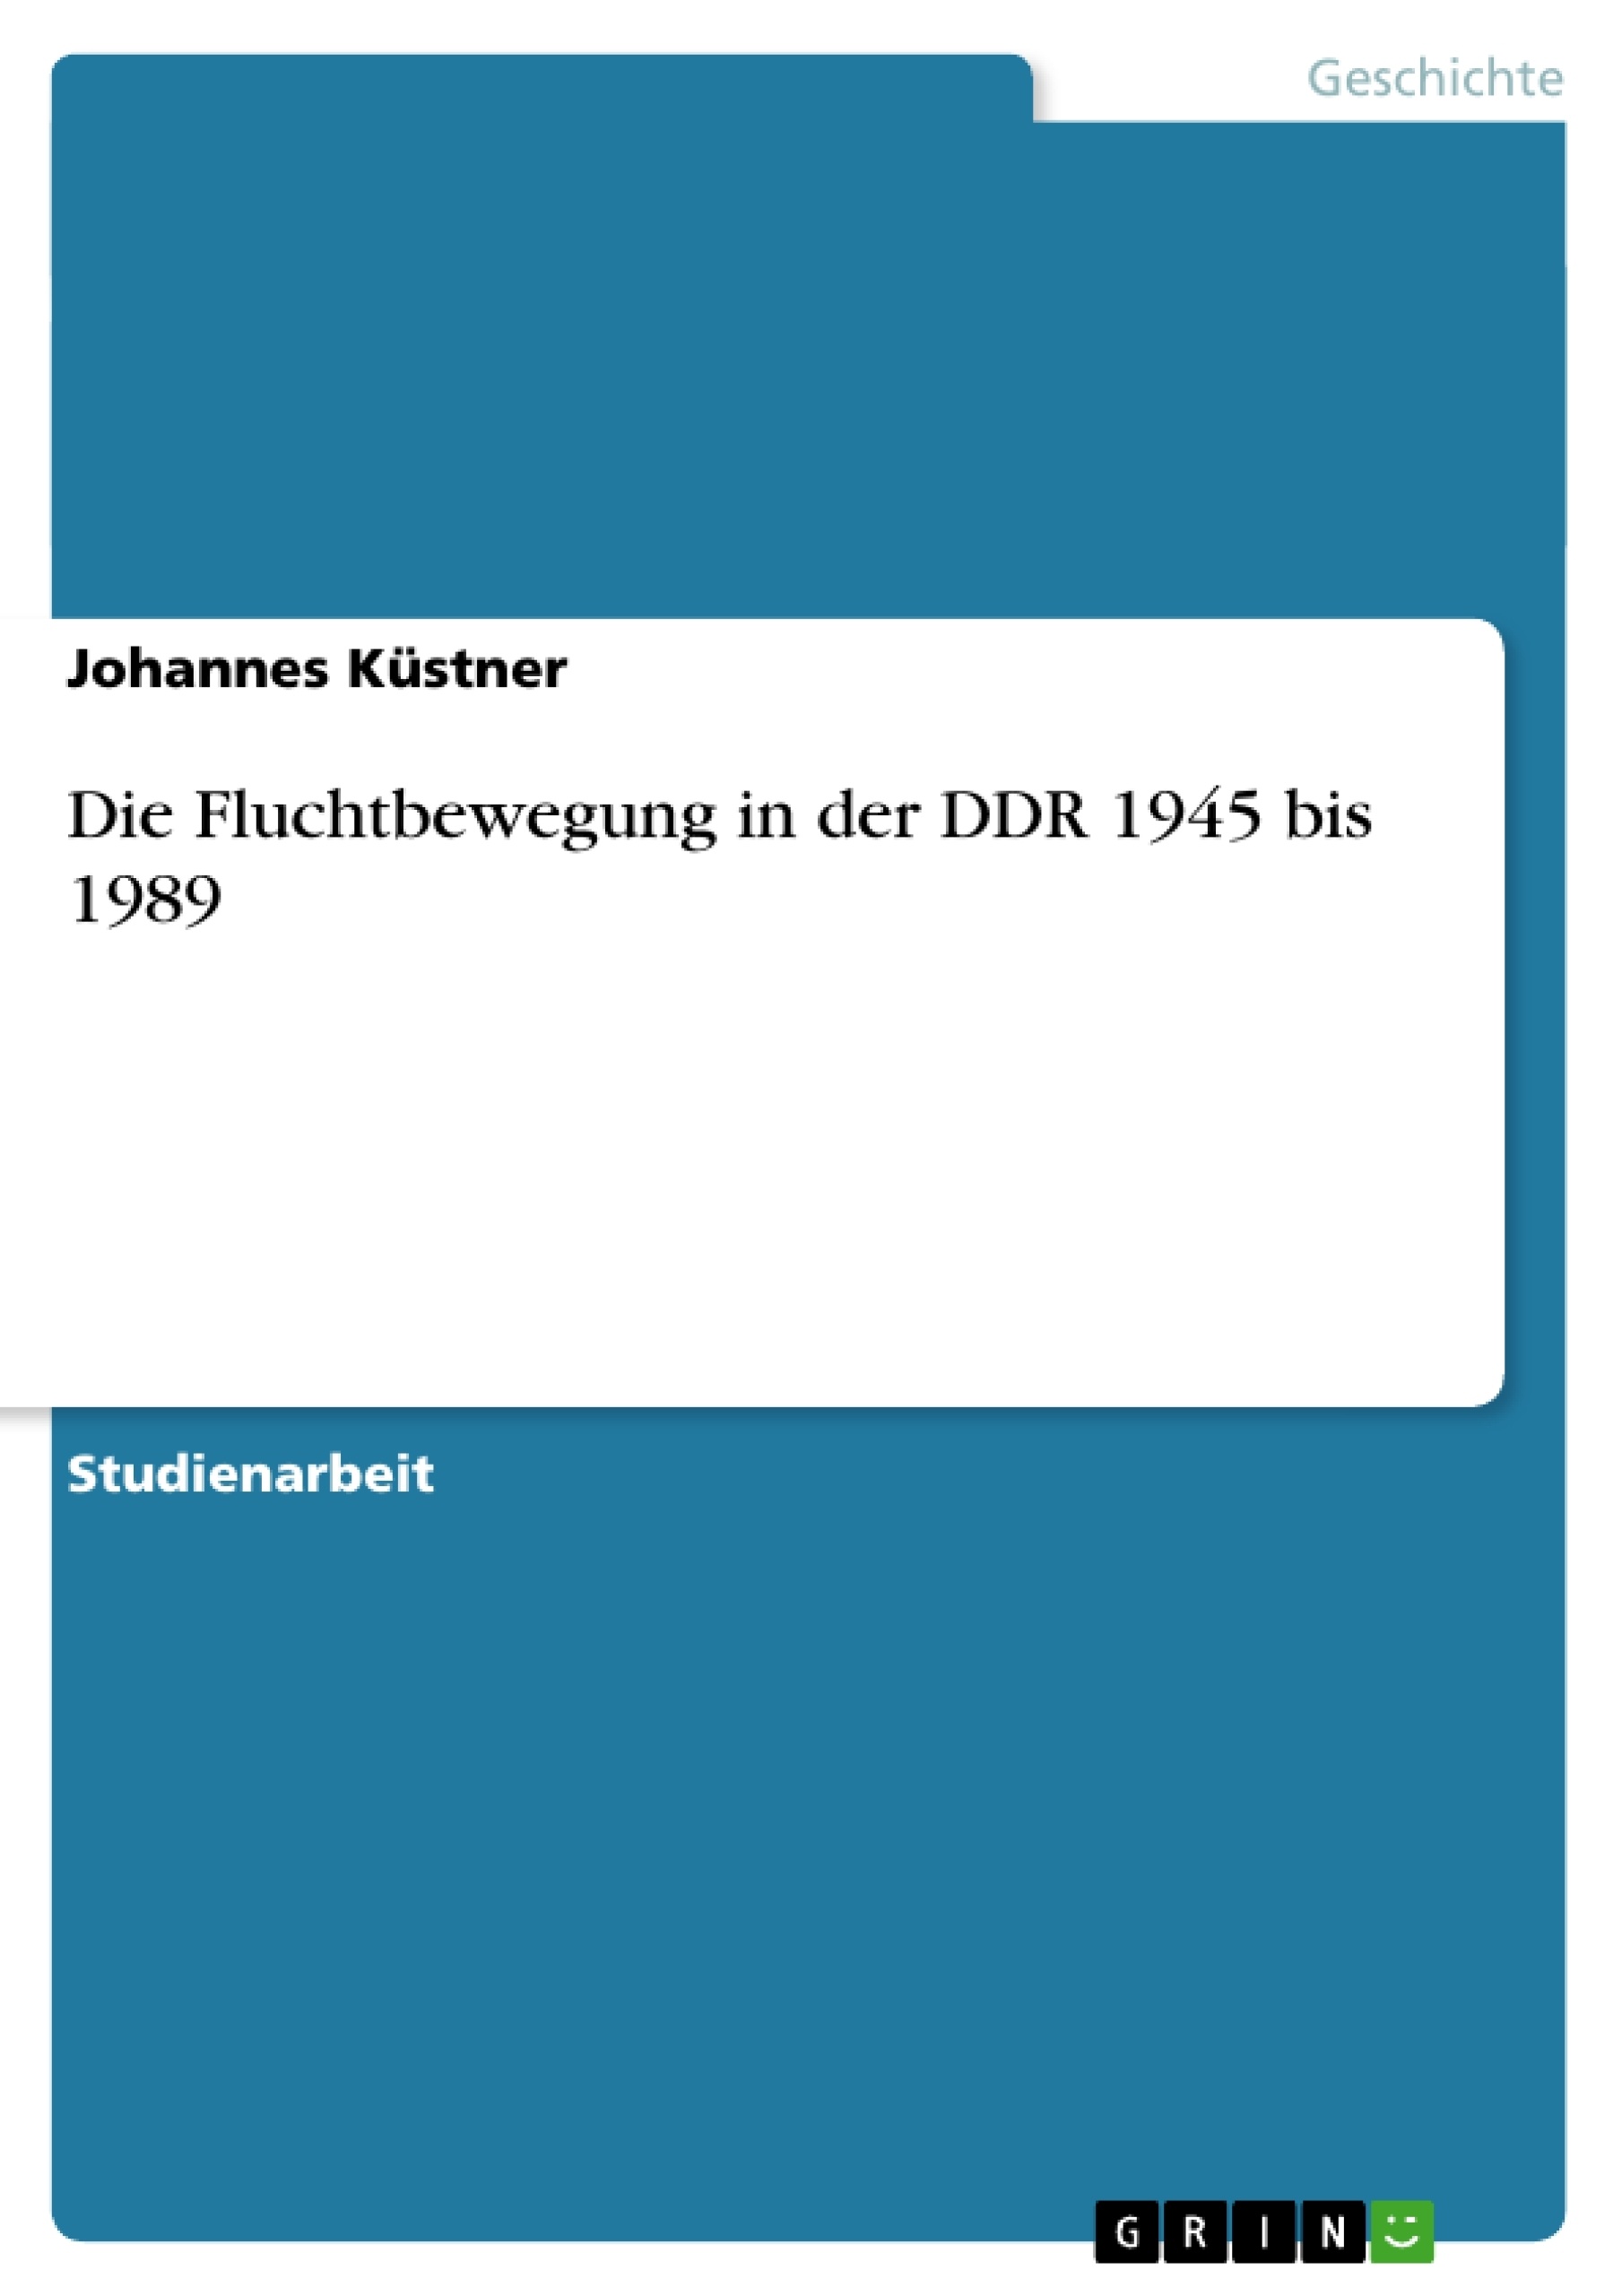 Título: Die Fluchtbewegung in der DDR 1945 bis 1989